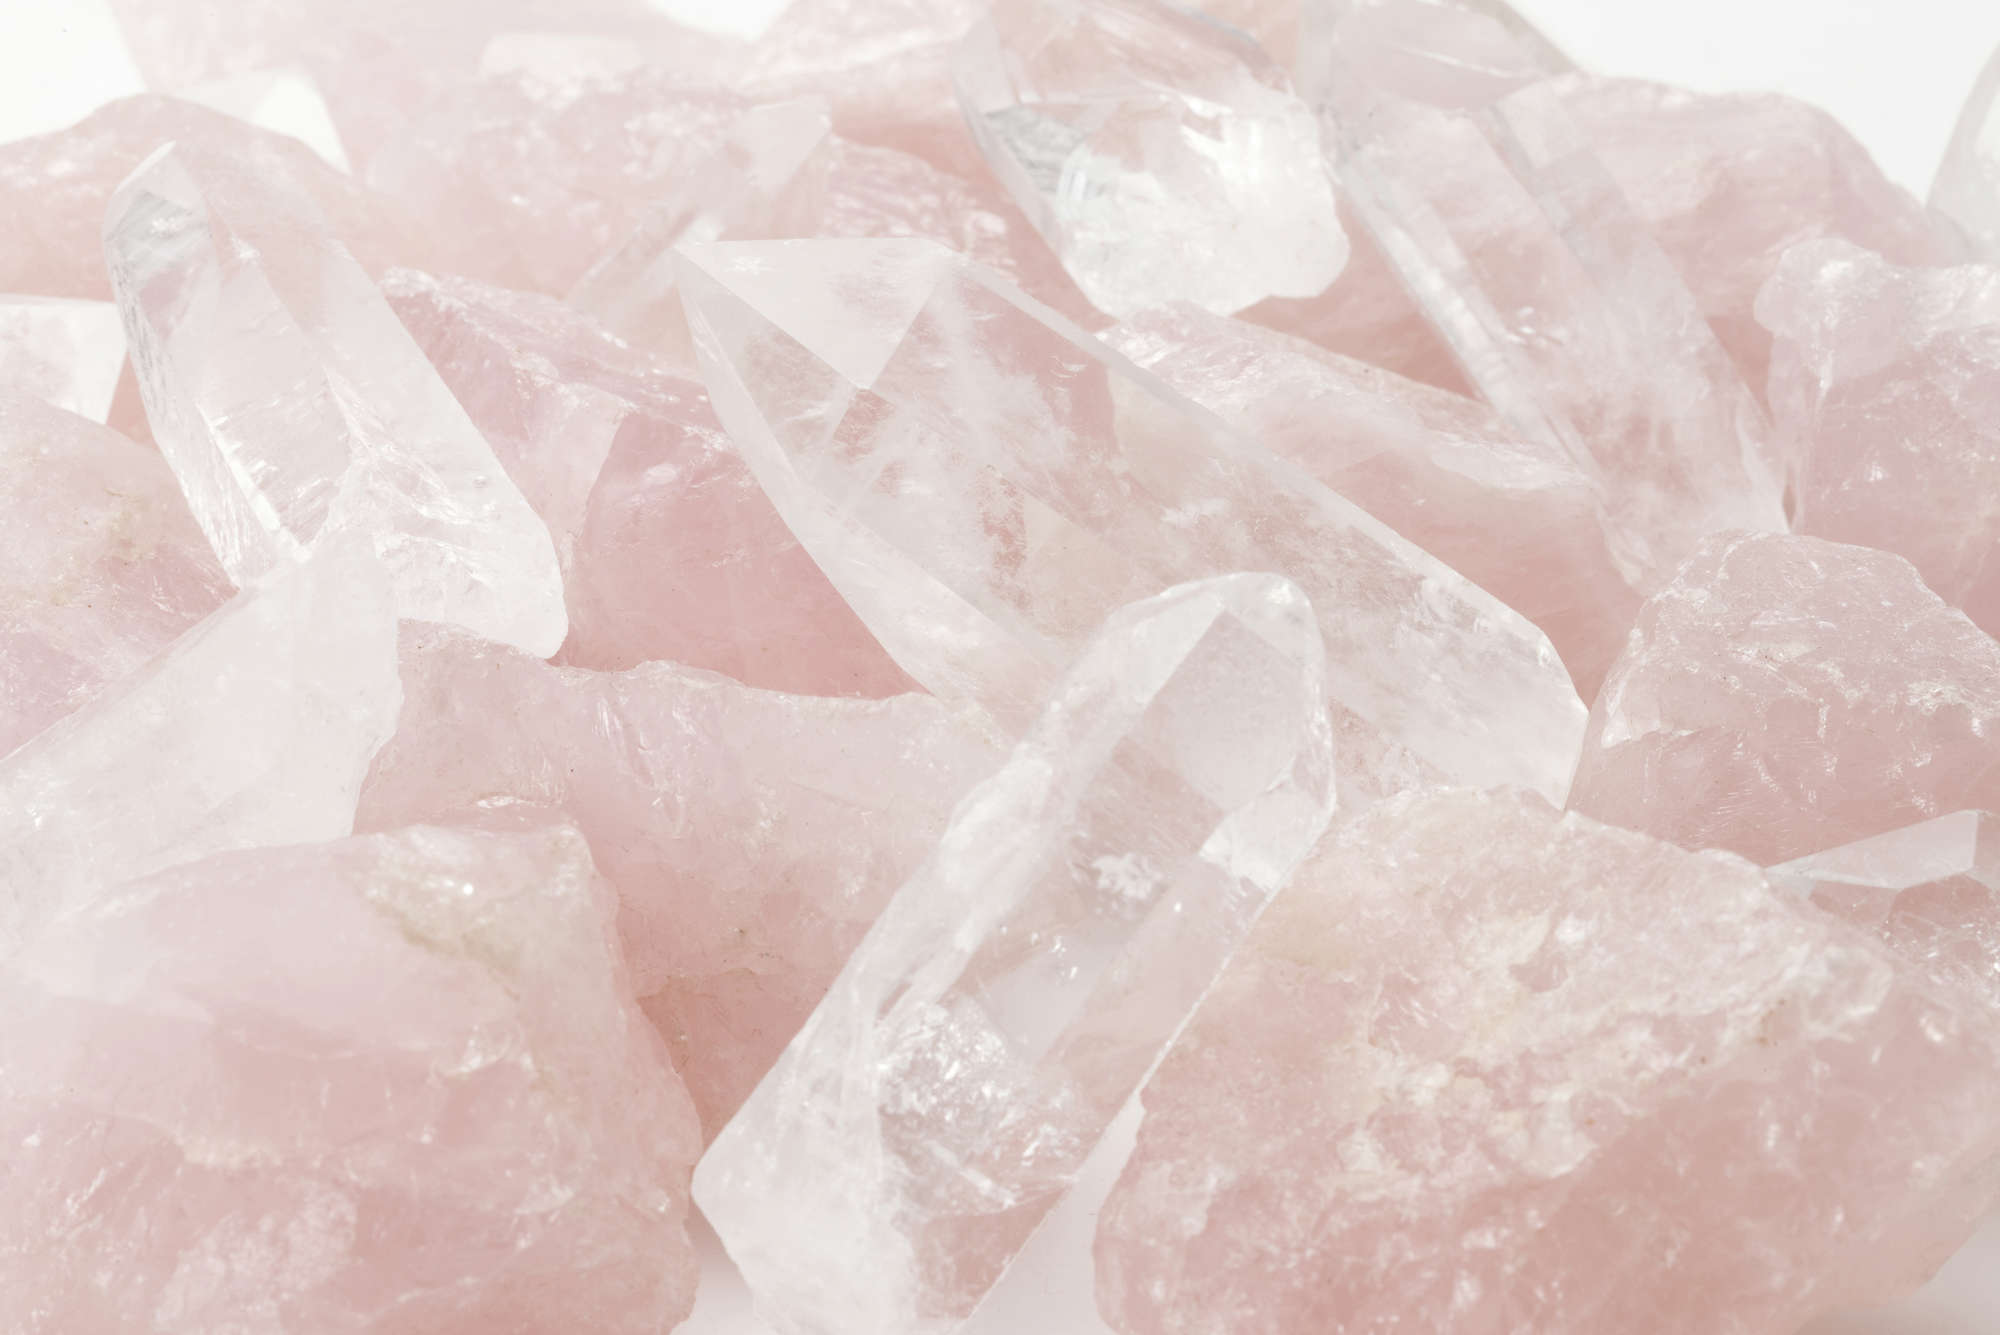             Fototapete Quarz Kristalle in Rose – Premium Glattvlies
        